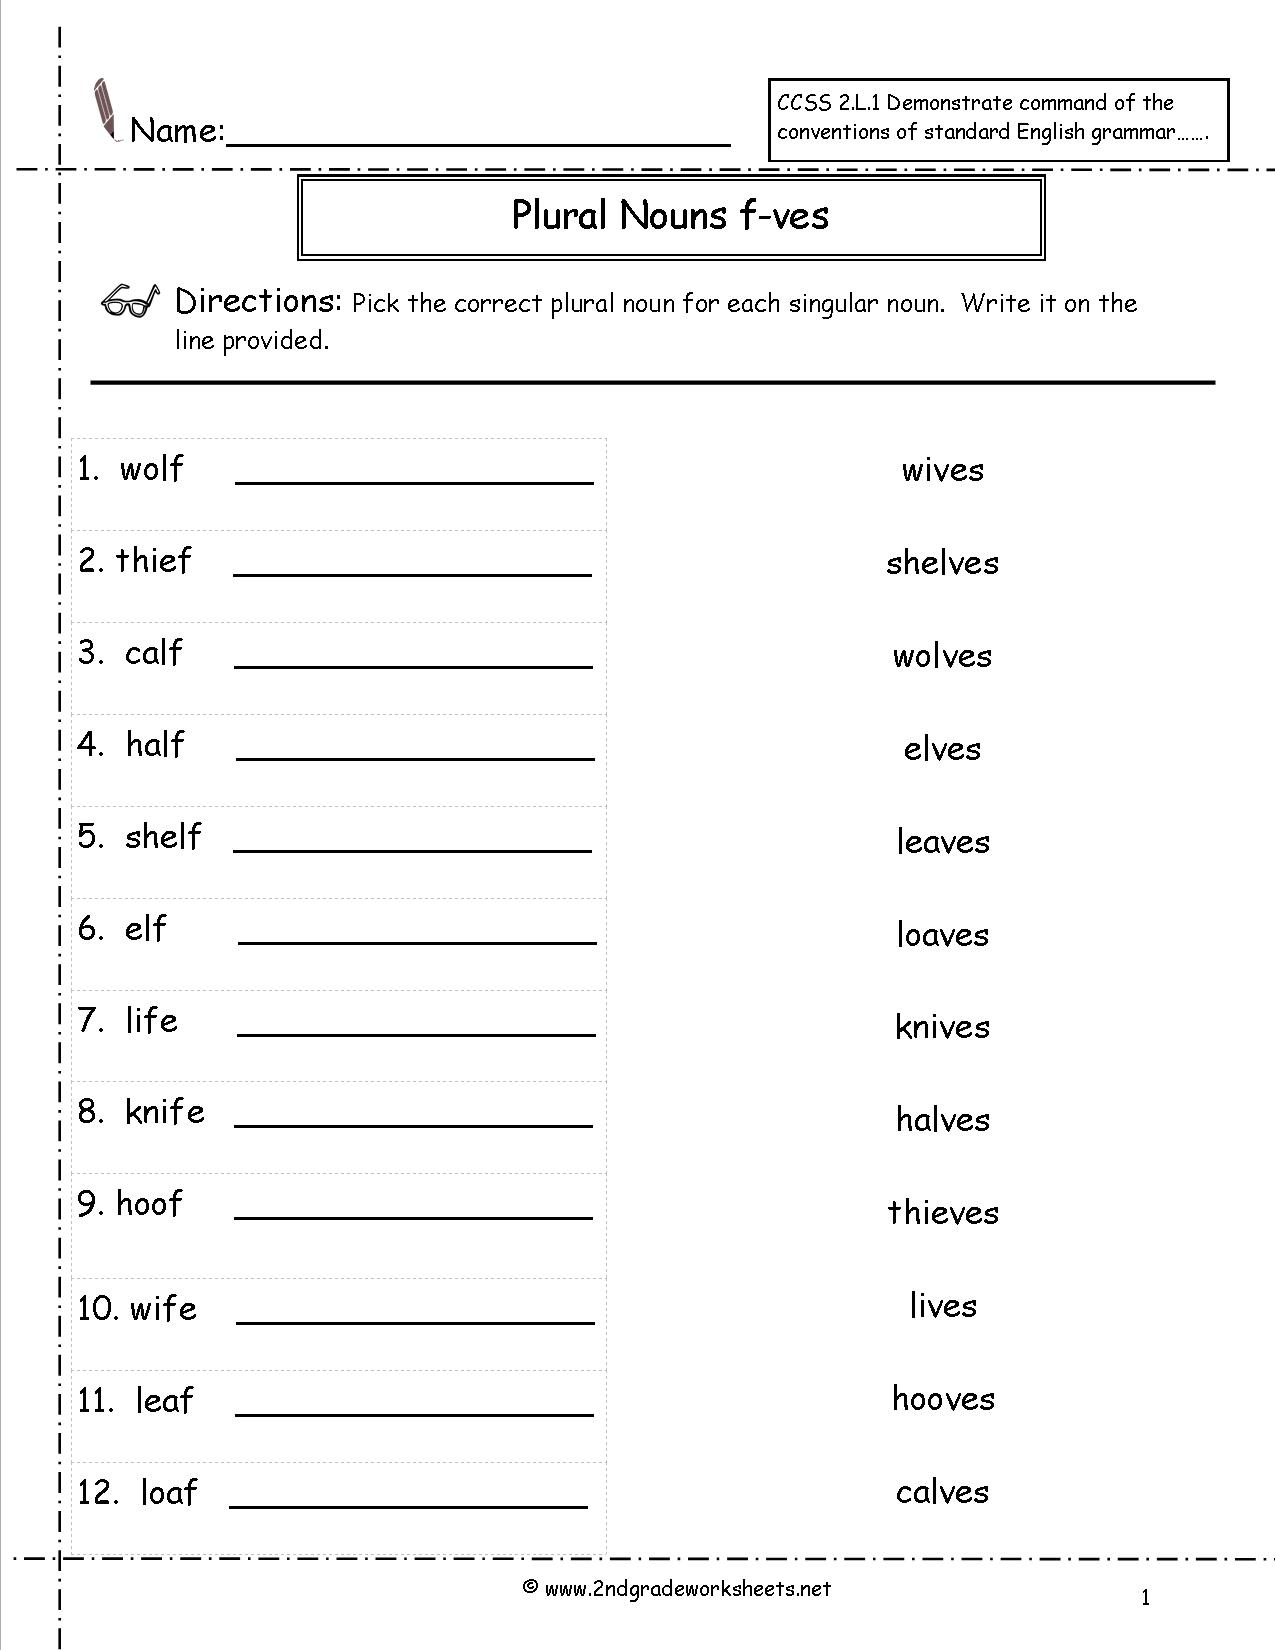 12 Best Images Of Super Teacher Worksheets Irregular Plurals Irregular Plural Nouns Worksheet